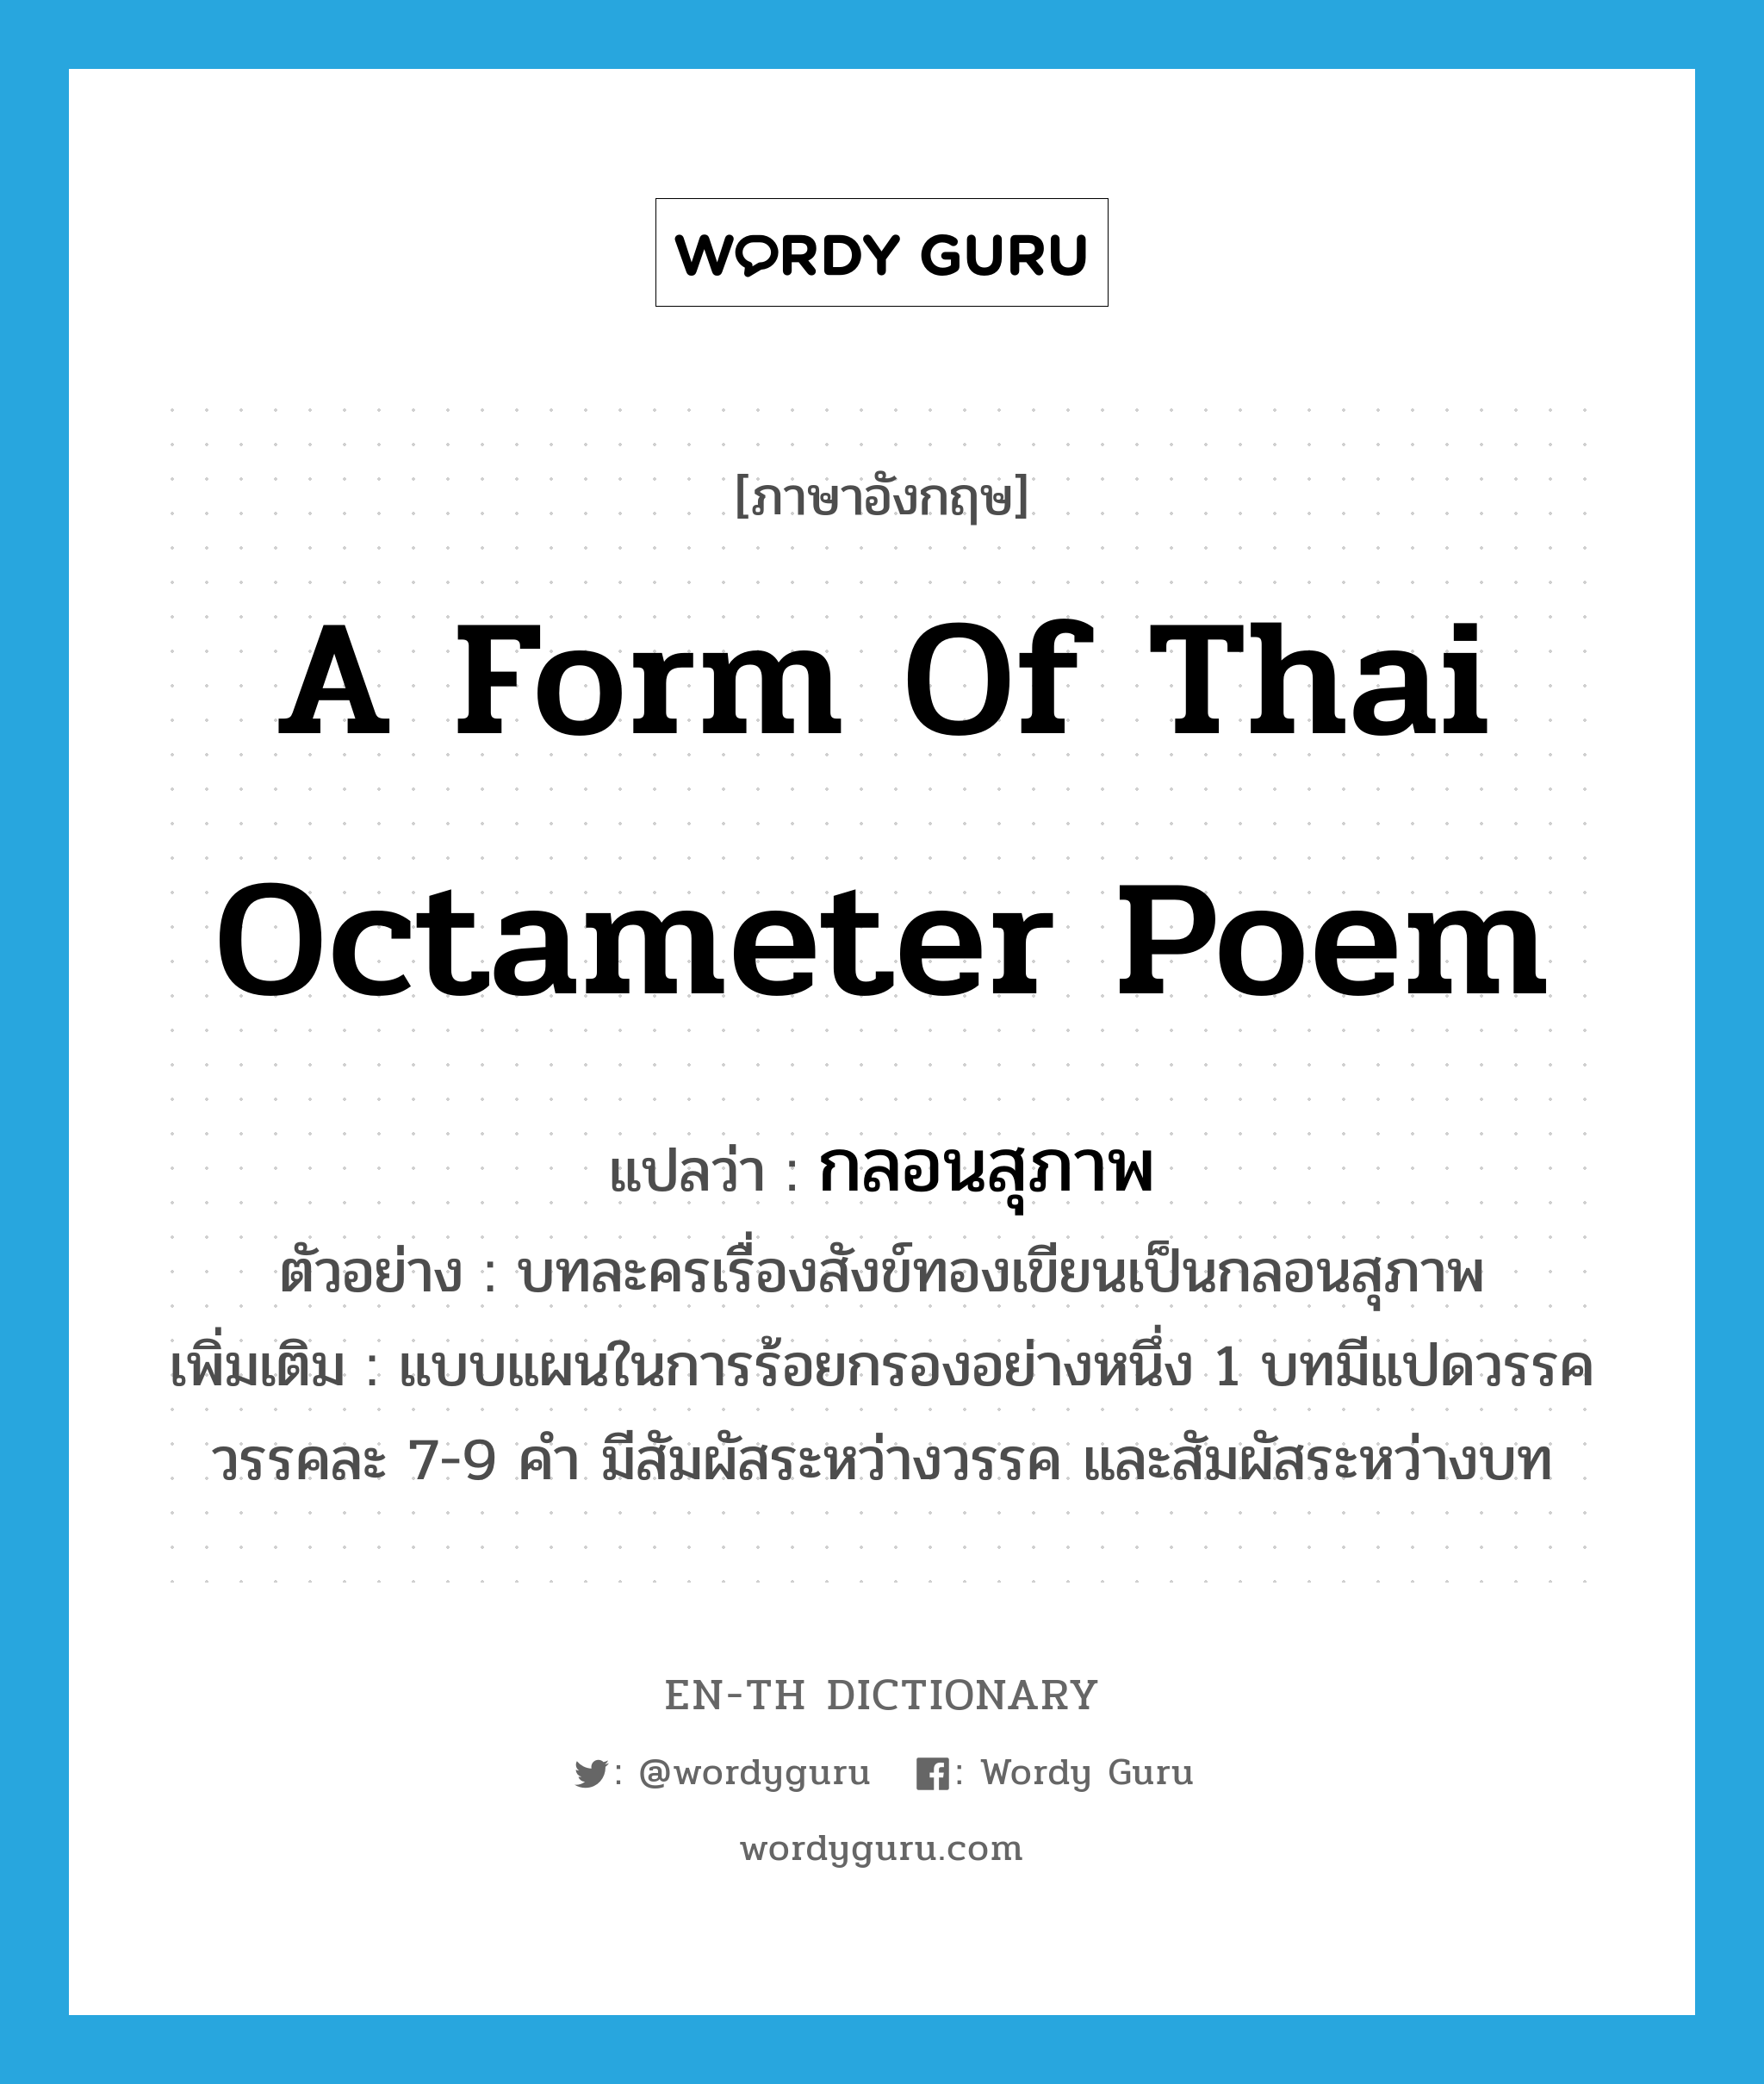 กลอนสุภาพ ภาษาอังกฤษ?, คำศัพท์ภาษาอังกฤษ กลอนสุภาพ แปลว่า a form of Thai octameter poem ประเภท N ตัวอย่าง บทละครเรื่องสังข์ทองเขียนเป็นกลอนสุภาพ เพิ่มเติม แบบแผนในการร้อยกรองอย่างหนึ่ง 1 บทมีแปดวรรค วรรคละ 7-9 คำ มีสัมผัสระหว่างวรรค และสัมผัสระหว่างบท หมวด N